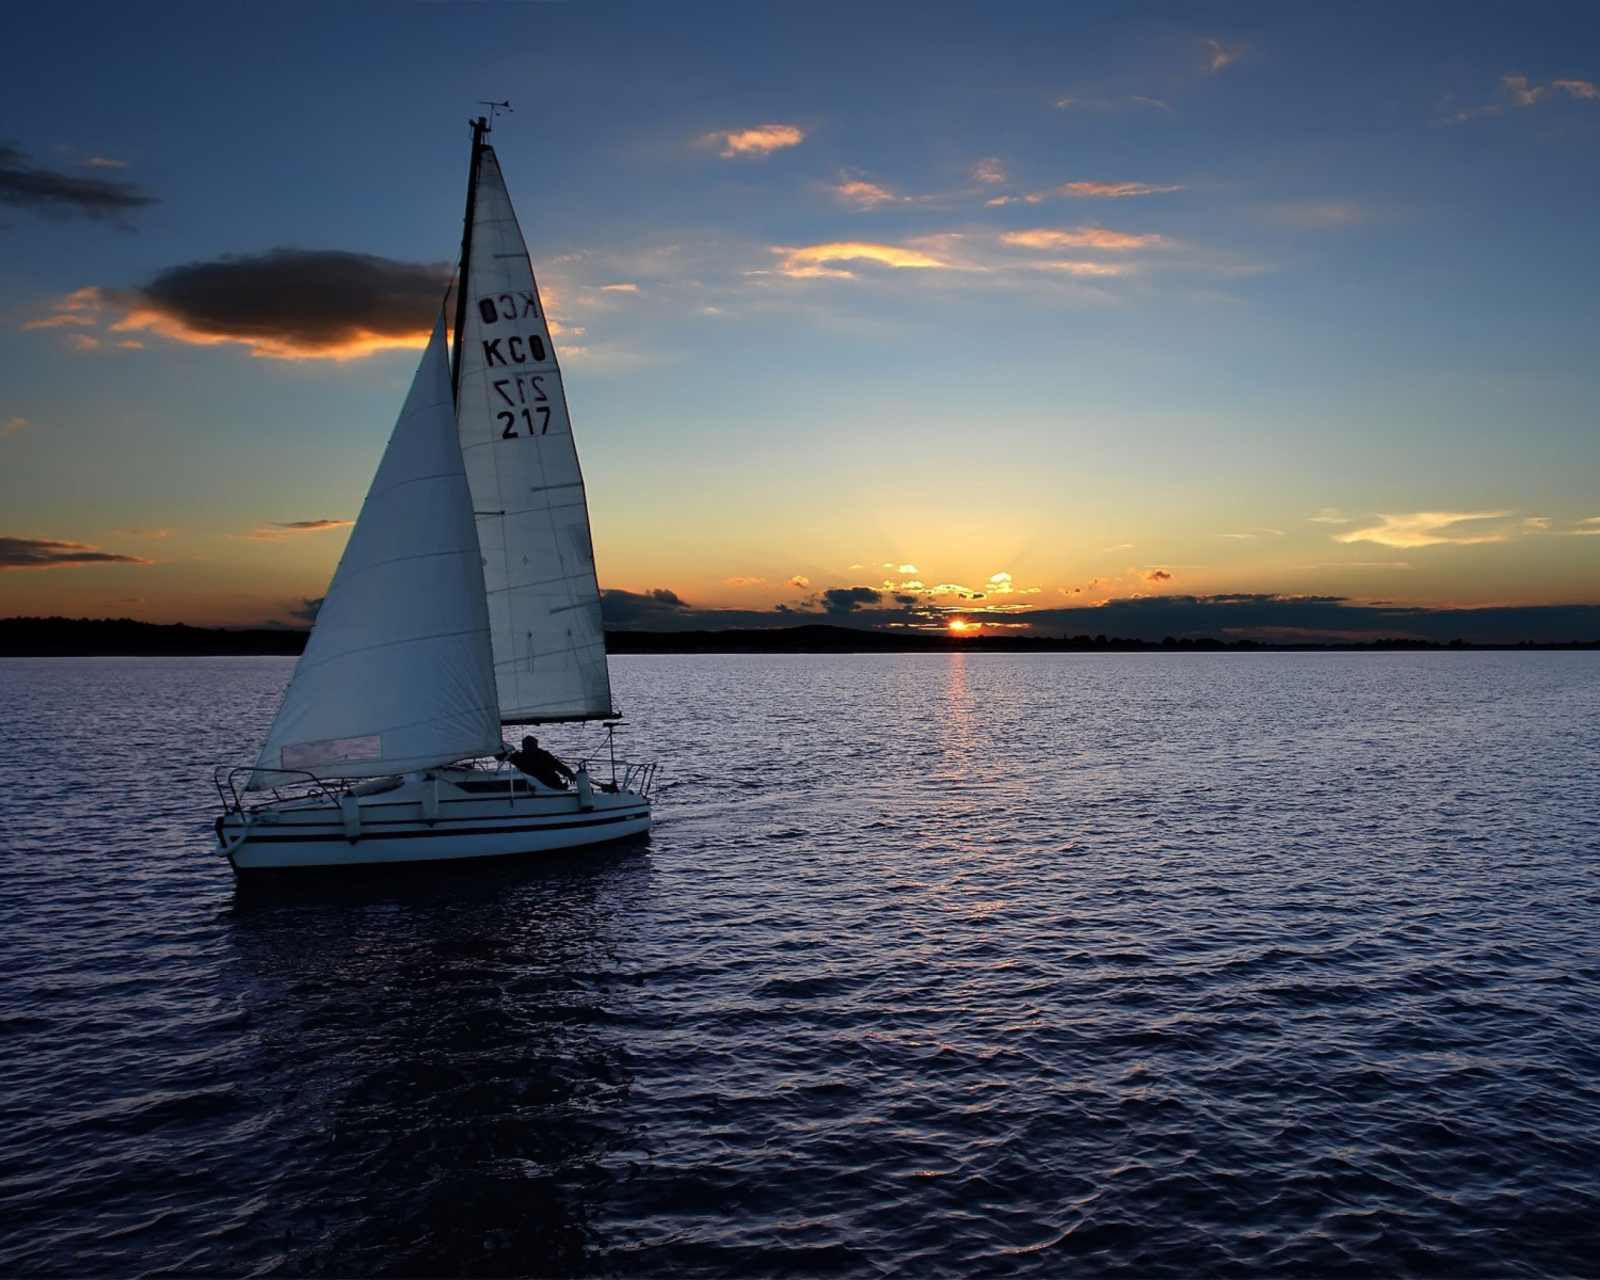 Обои Sailboat At Sunset 1600x1280